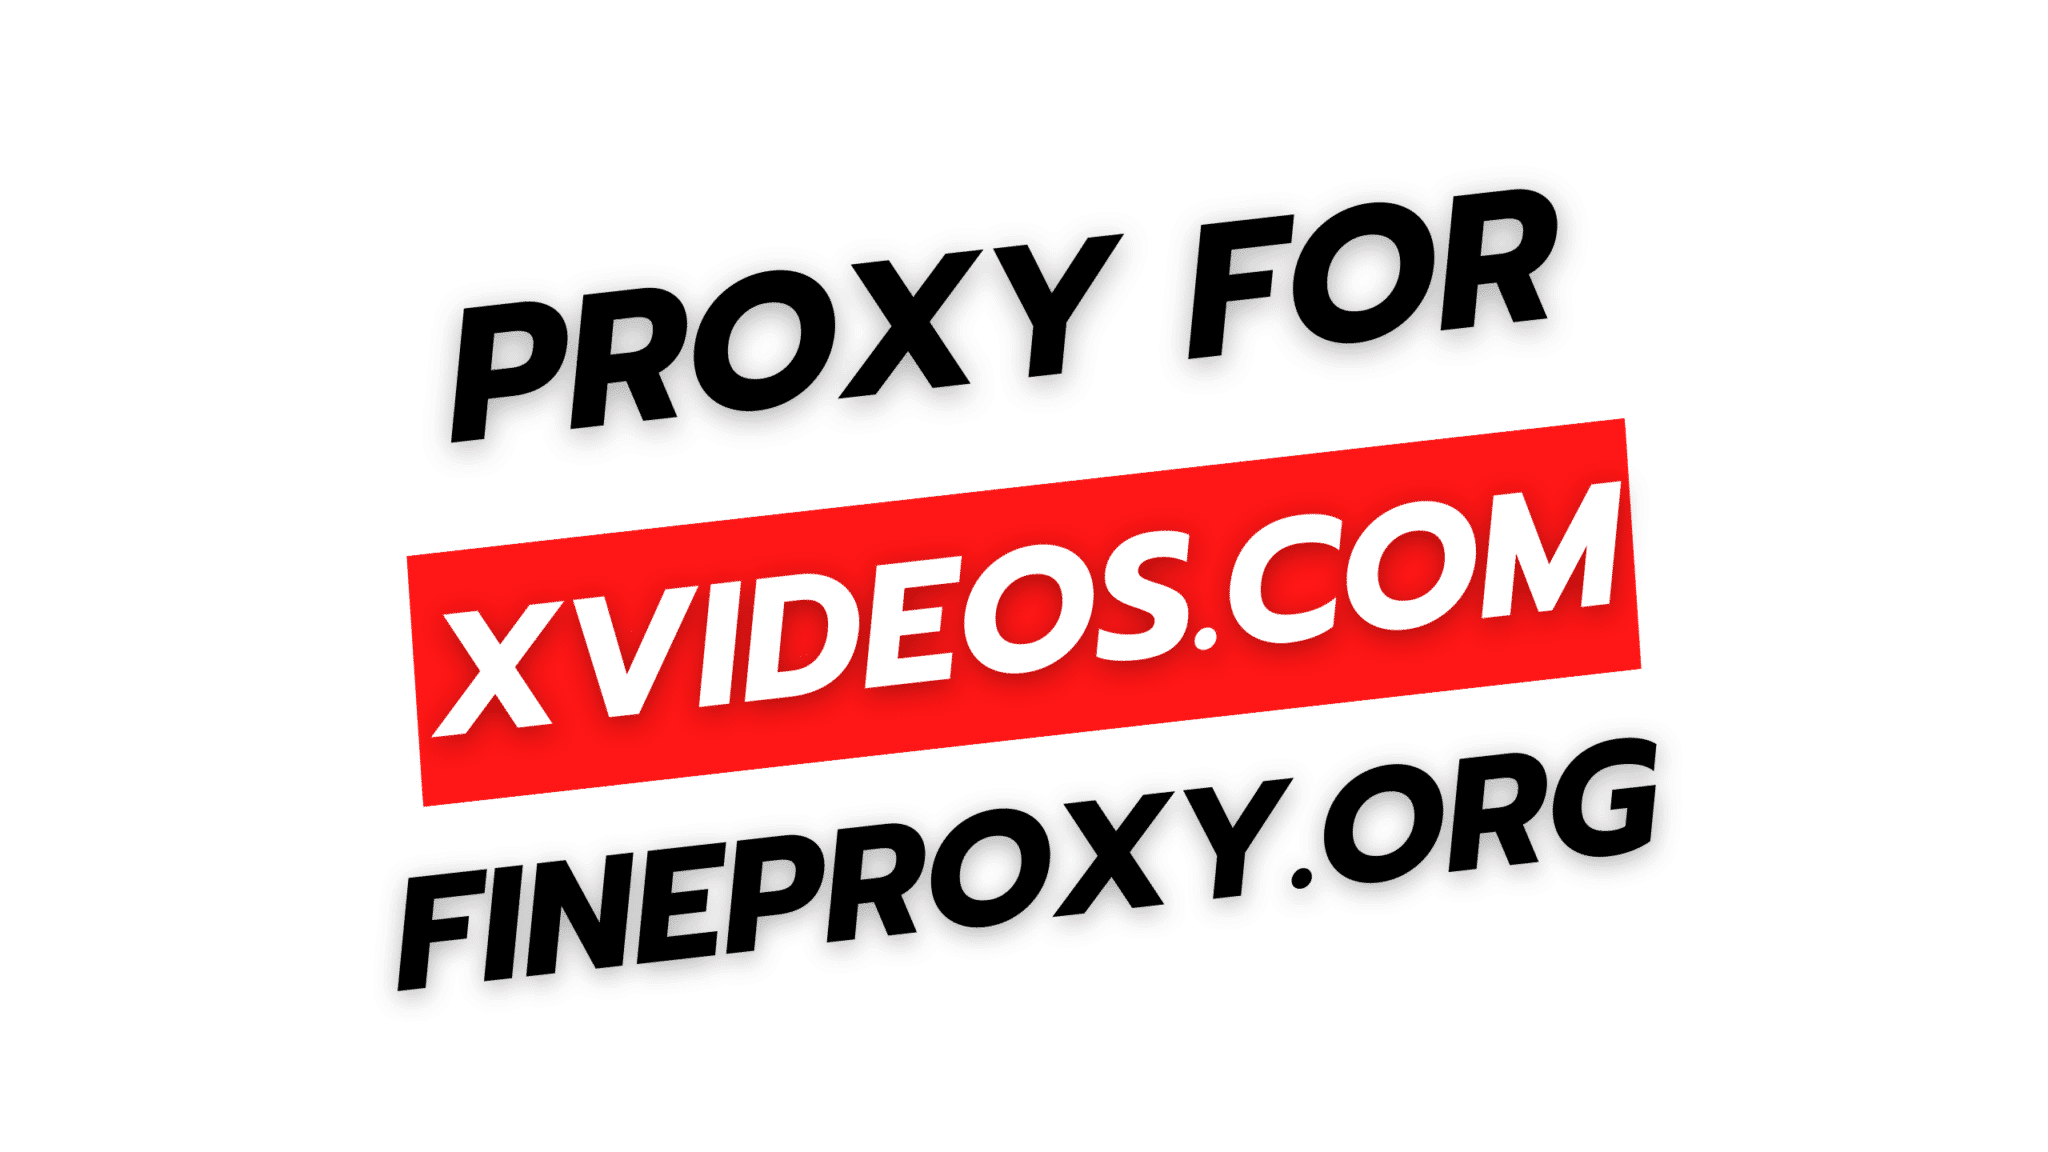 Xvideos india proxy